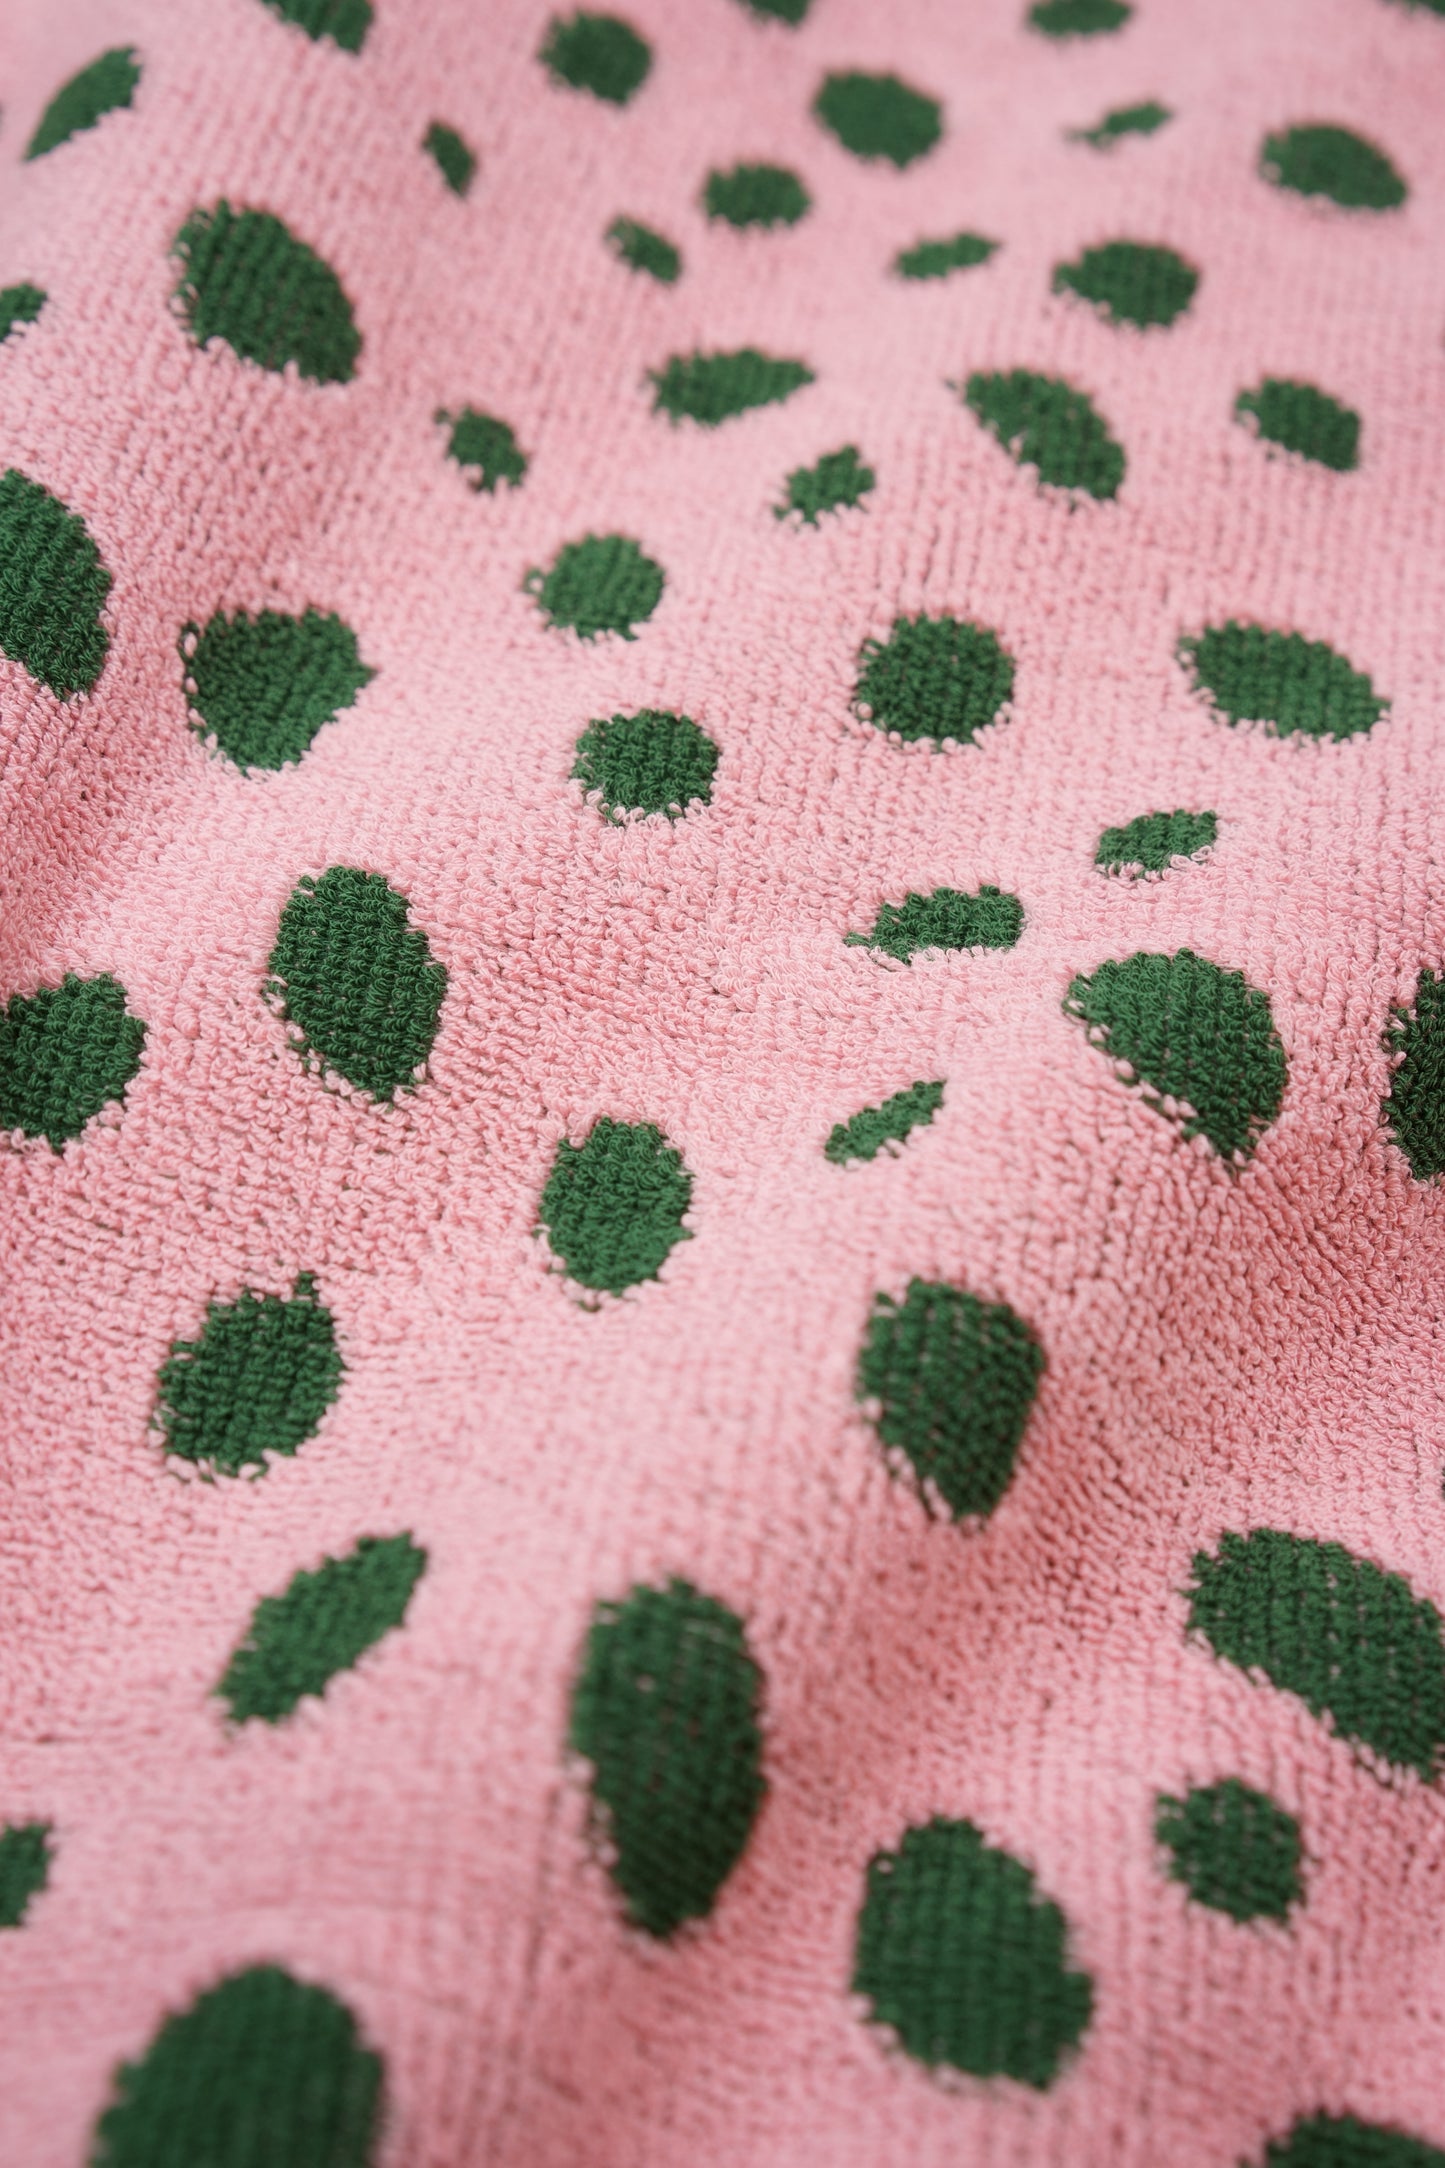 Pebbles Bath Towel | Pink & Green